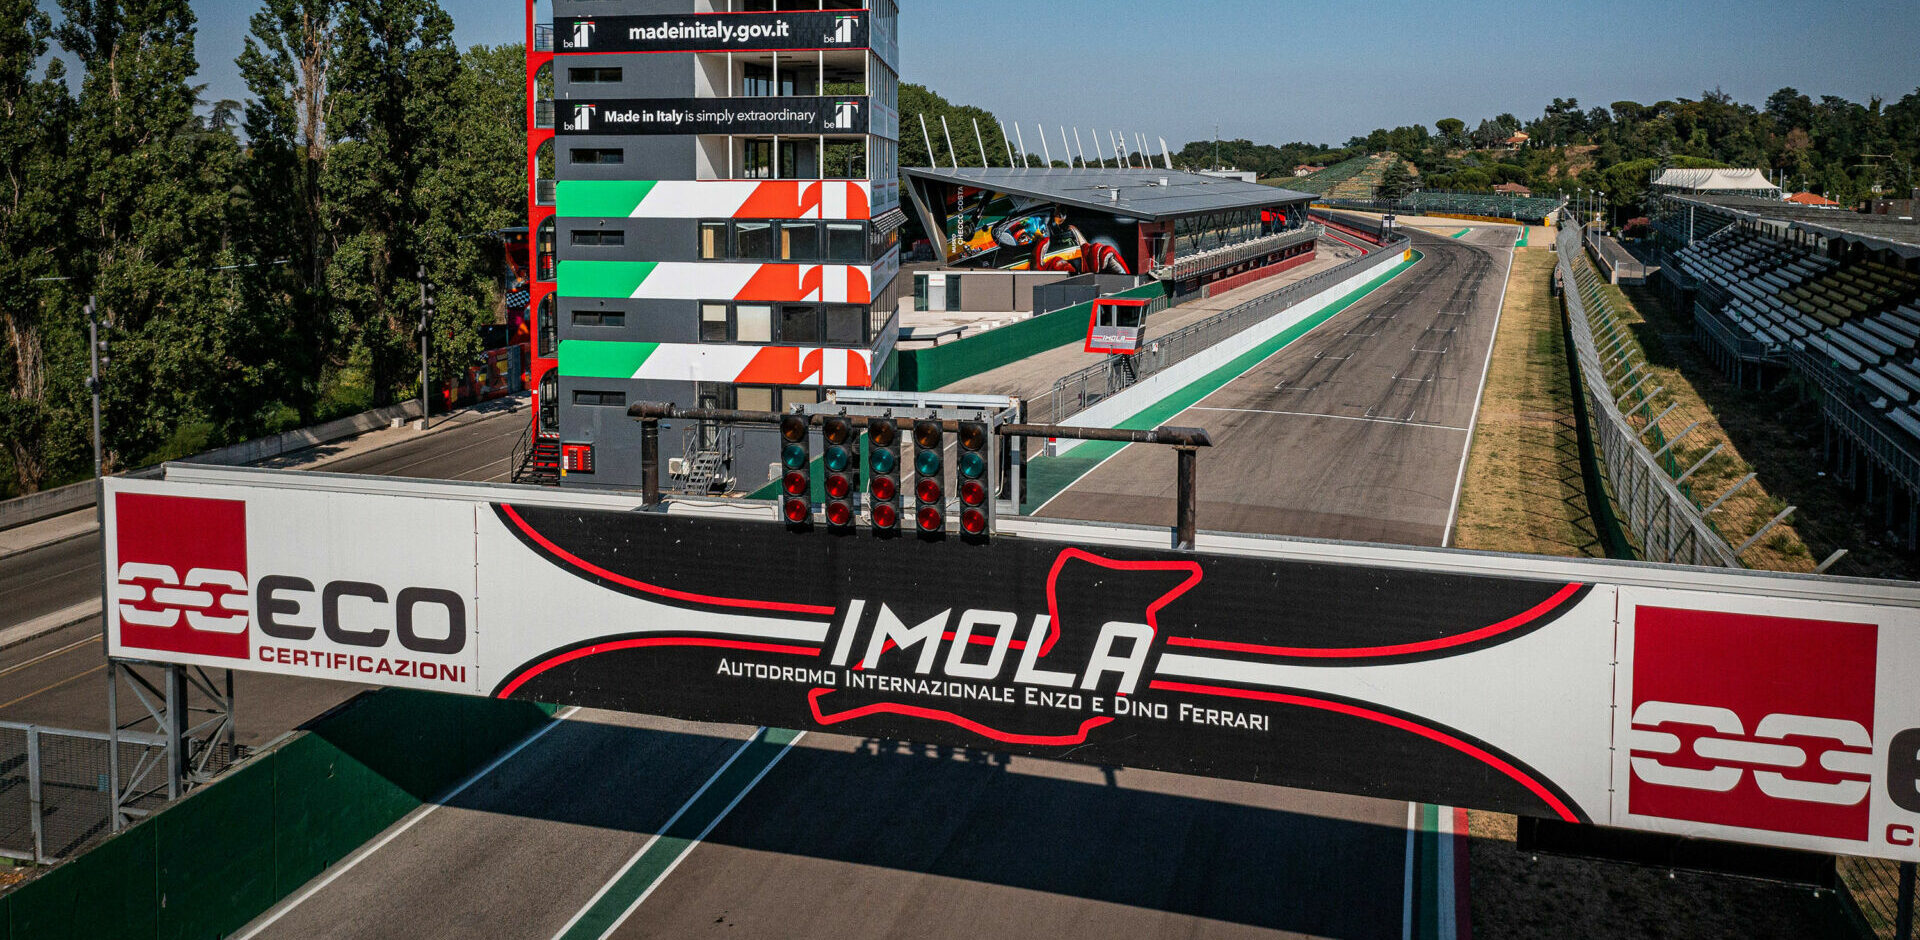 Autodromo Internazionale Enzo e Dino Ferrari di Imola has been confirmed as the host of the seventh round of the 2023 FIM Superbike World Championship. Photo courtesy Dorna.